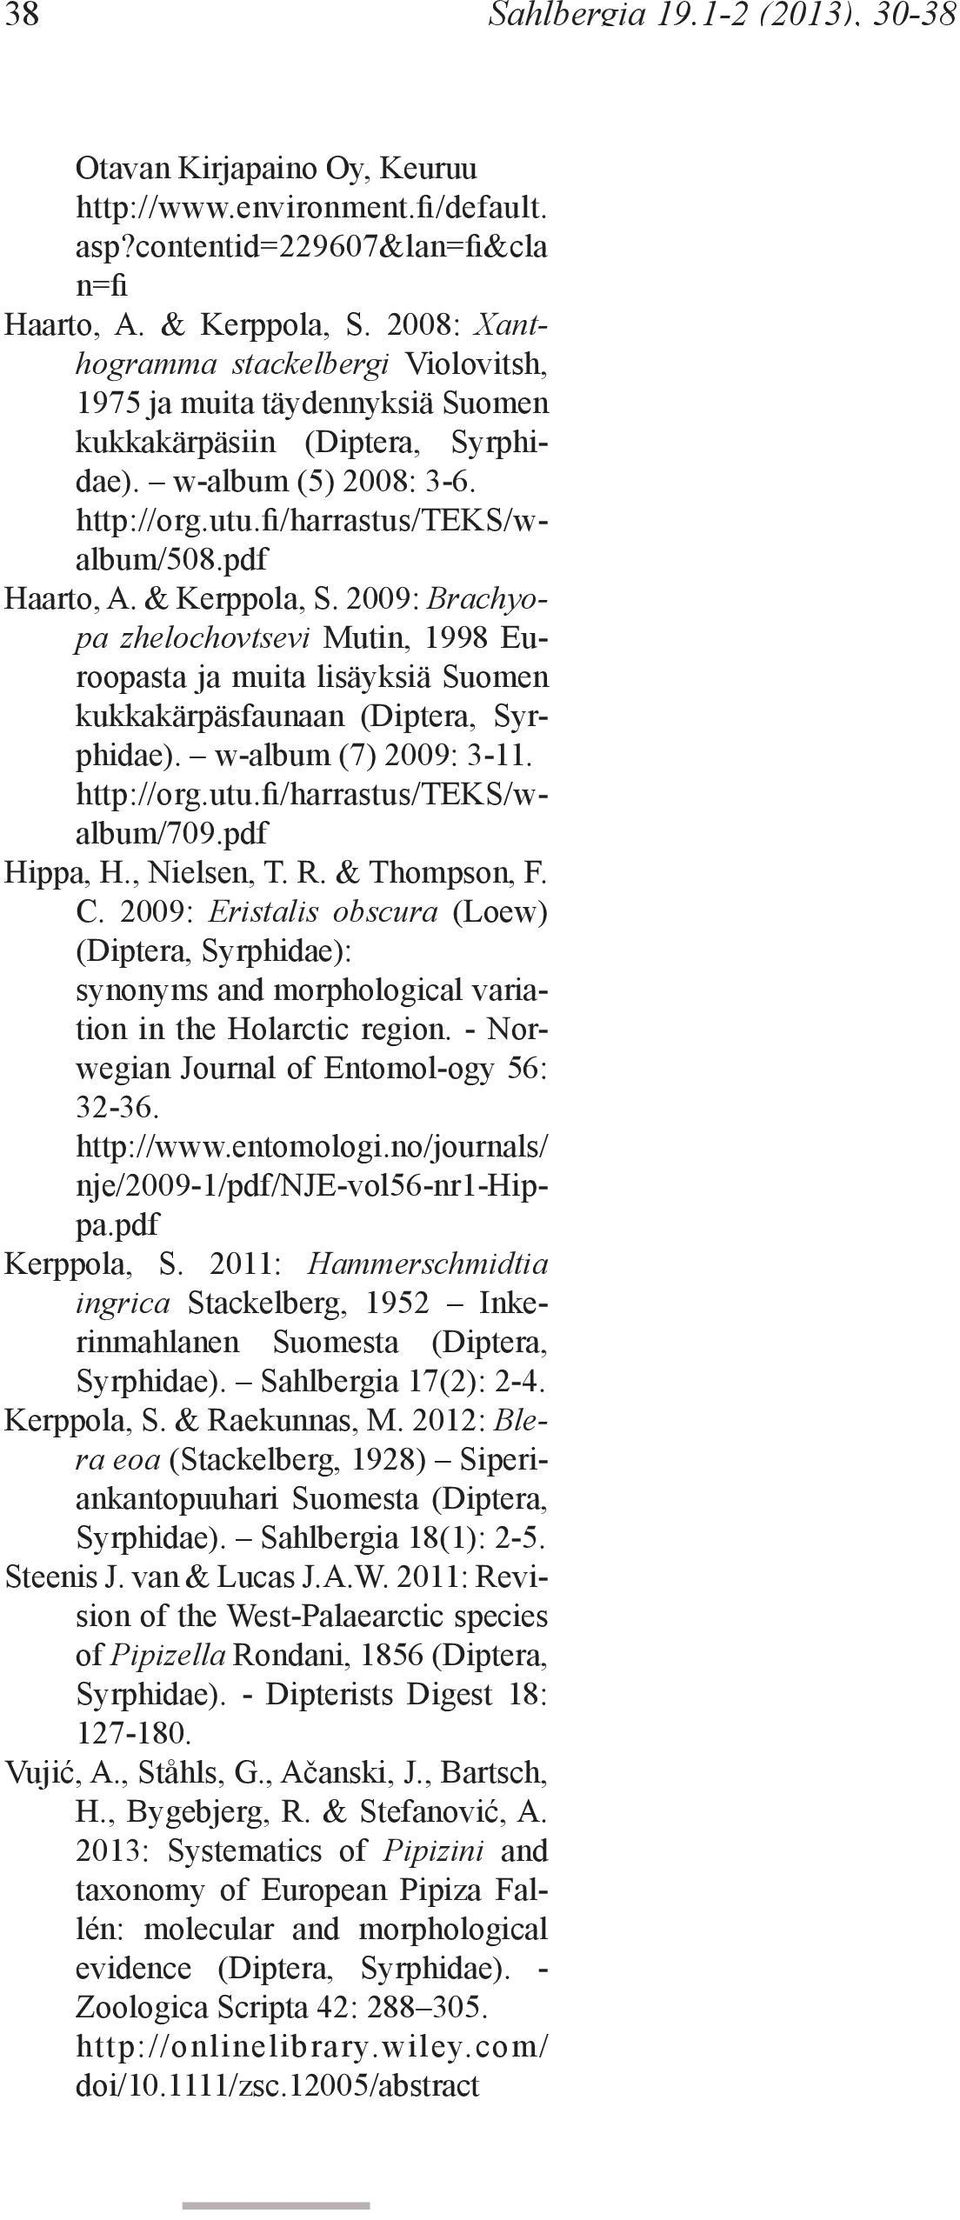 & Kerppola, S. 2009: Brachyopa zhelochovtsevi Mutin, 1998 Euroopasta ja muita lisäyksiä Suomen kukkakärpäsfaunaan (Diptera, Syrphidae). w-album (7) 2009: 3-11. http://org.utu.